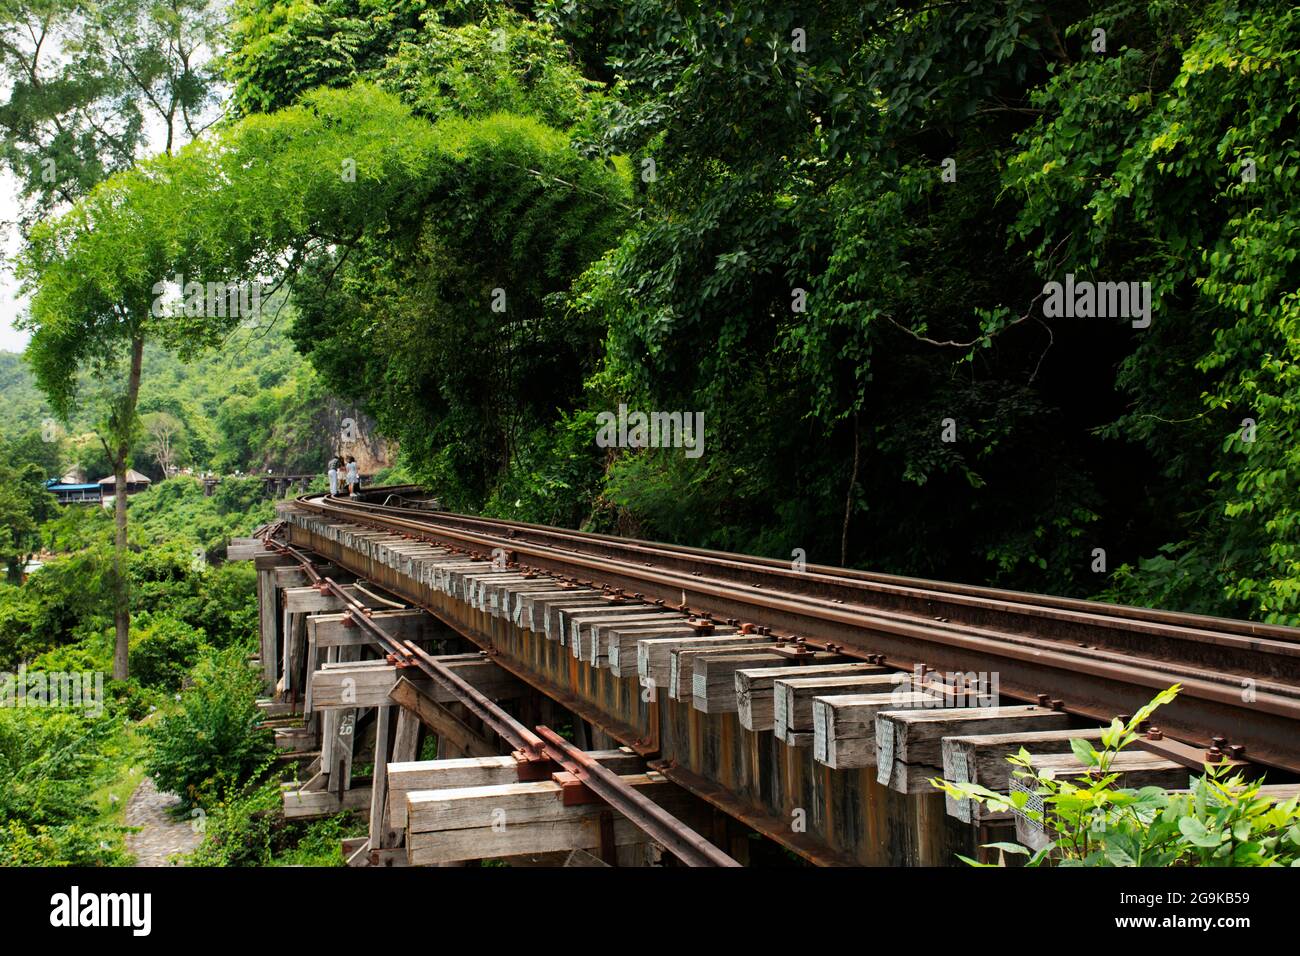 Chemin de fer entre hellfire Pass Mountain et si Sawat ou Khwae Kwai rivière avec forêt sauvage jungle dans le parc national de Sai Yok pour Voyage vi Banque D'Images